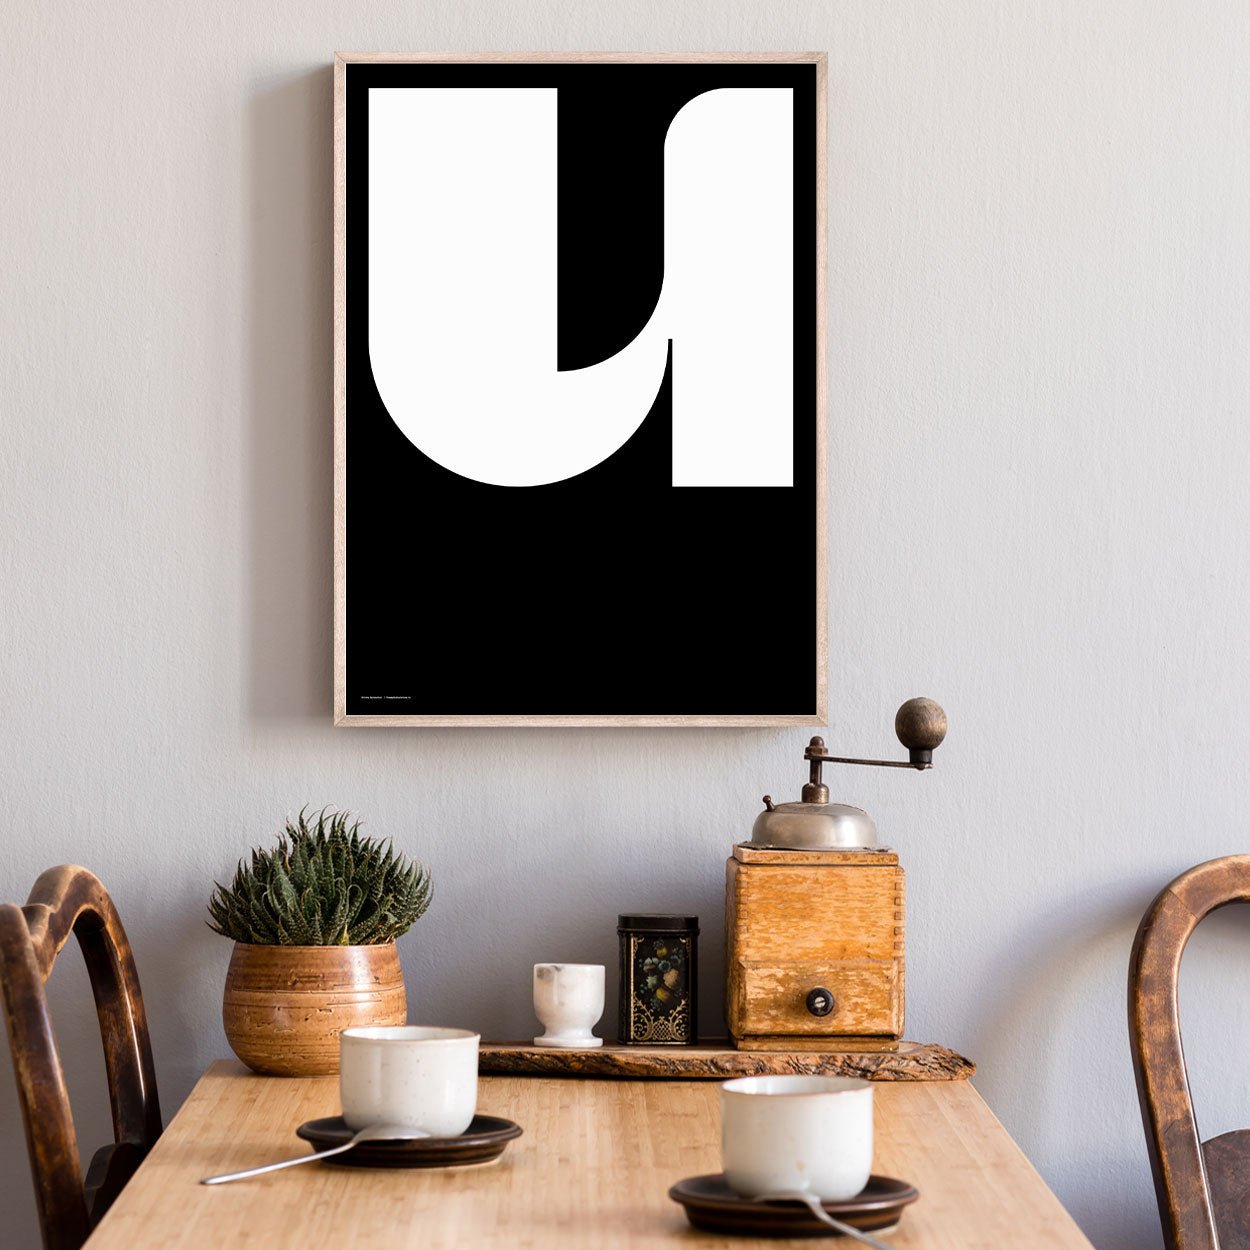 modern kitchen interior with minimalist artwork 